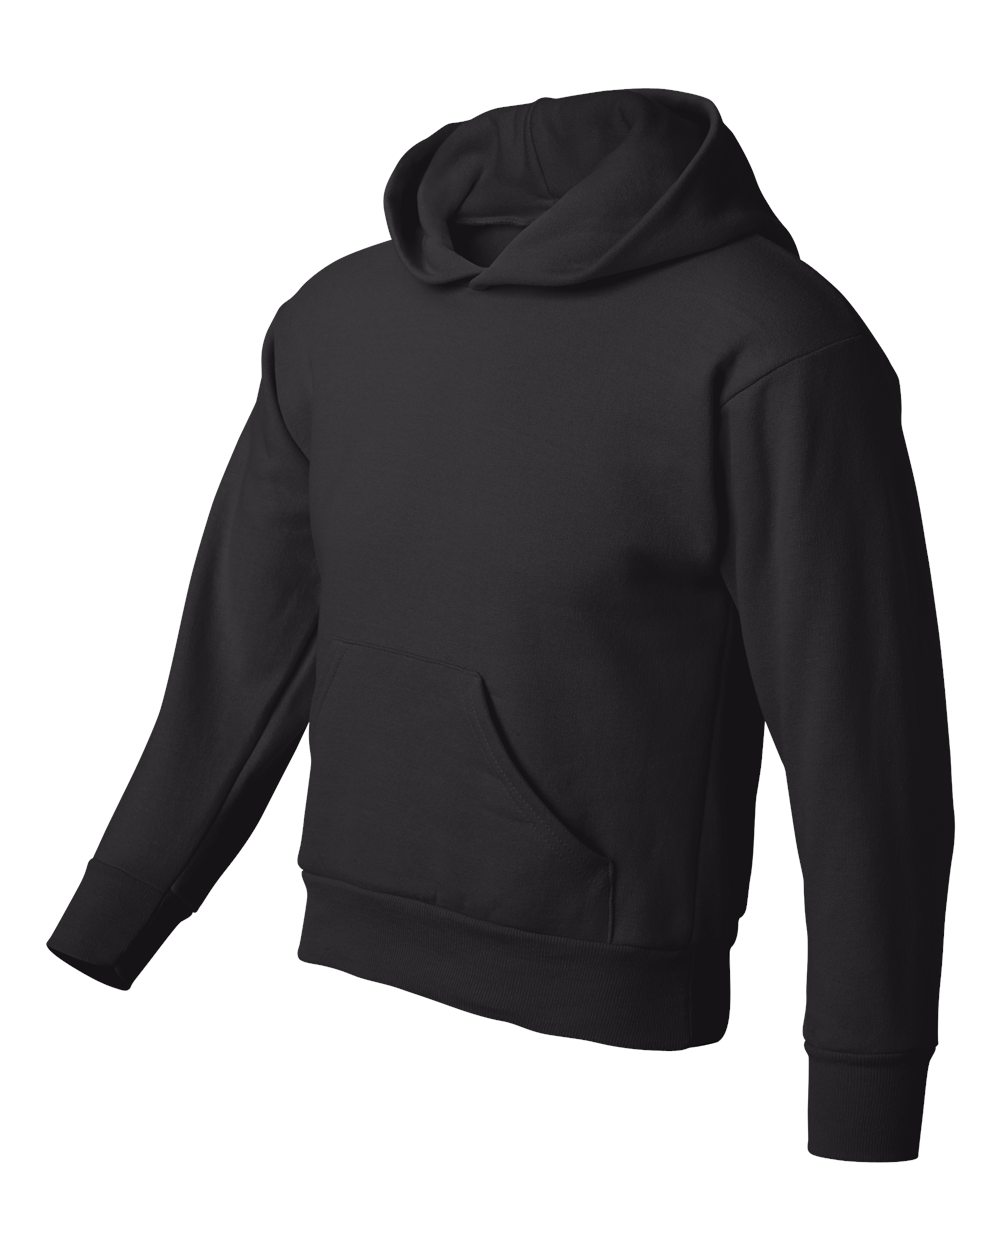 Hanes P473 - ComfortBlend EcoSmart Youth Hooded Sweatshirt